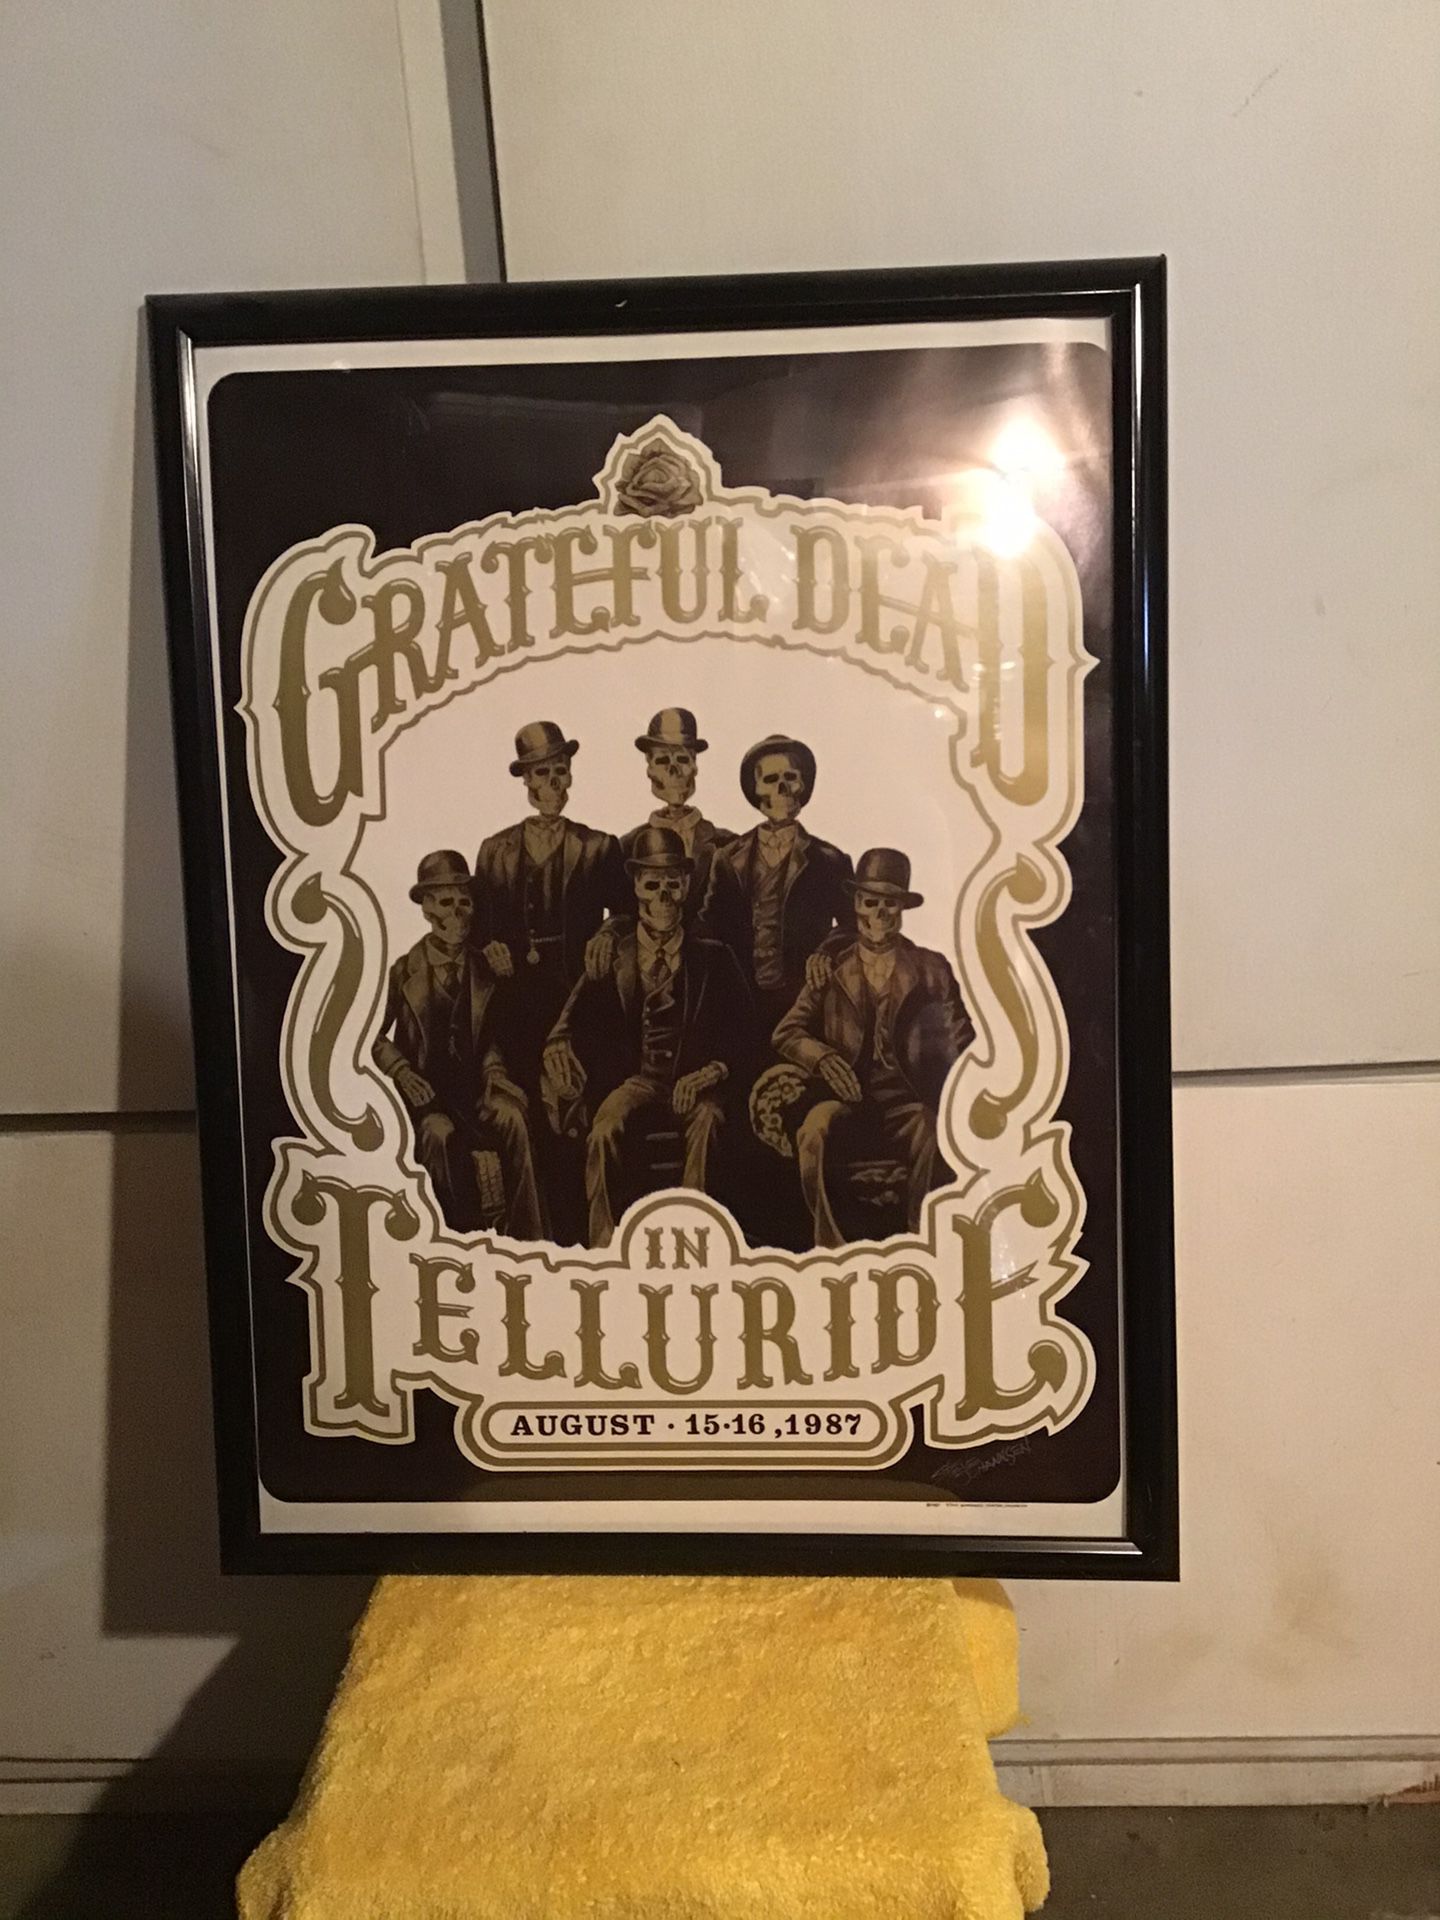 Grateful dead concert poster.